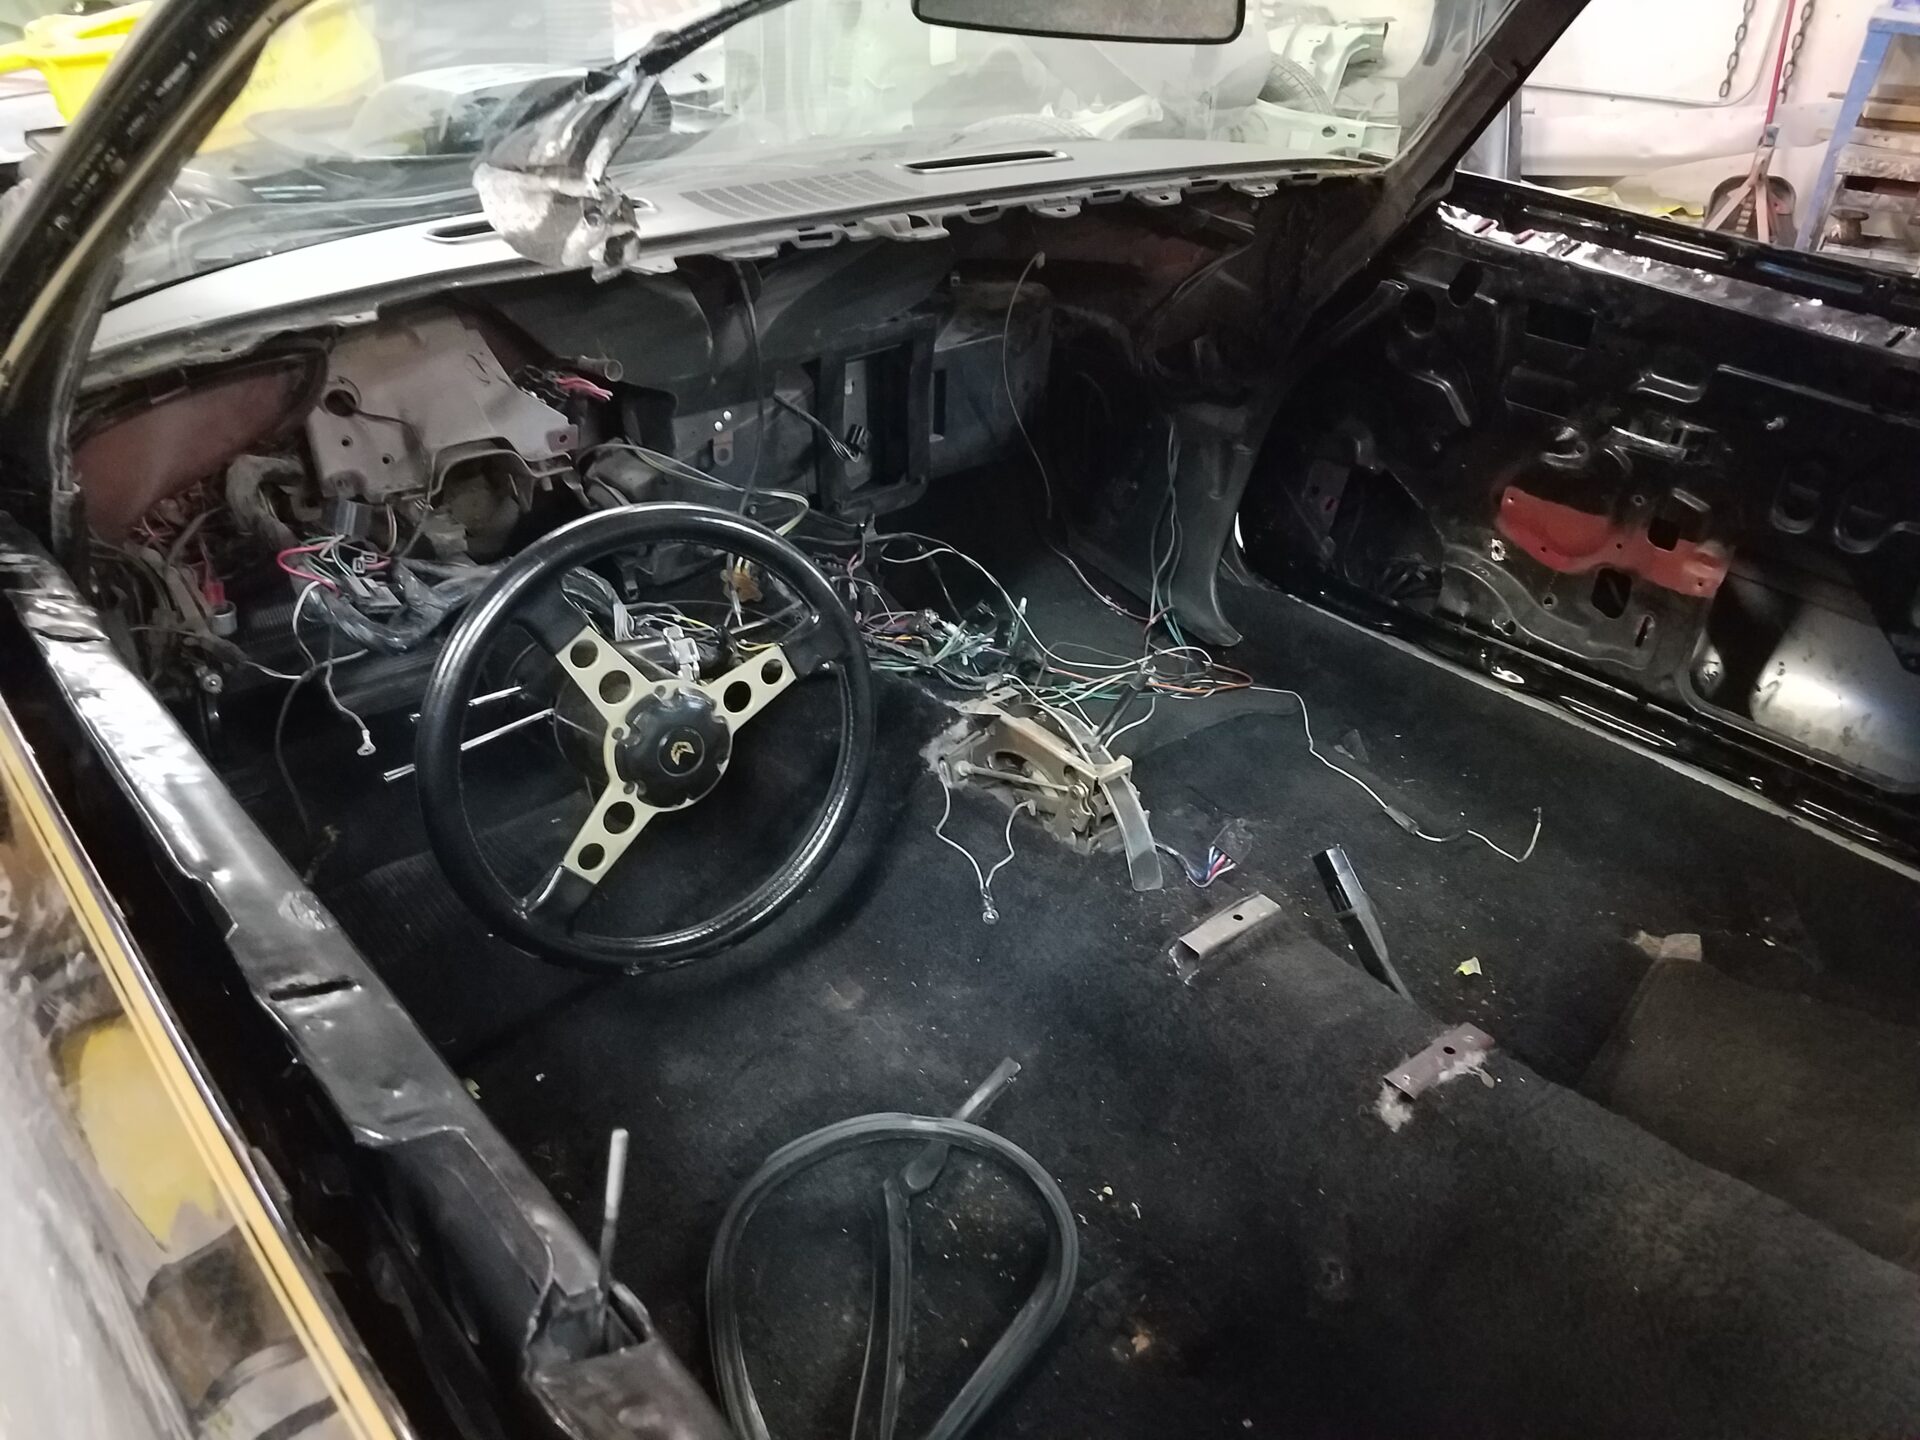 A 1976 Pontiac Trans Am S/E interior under restoration